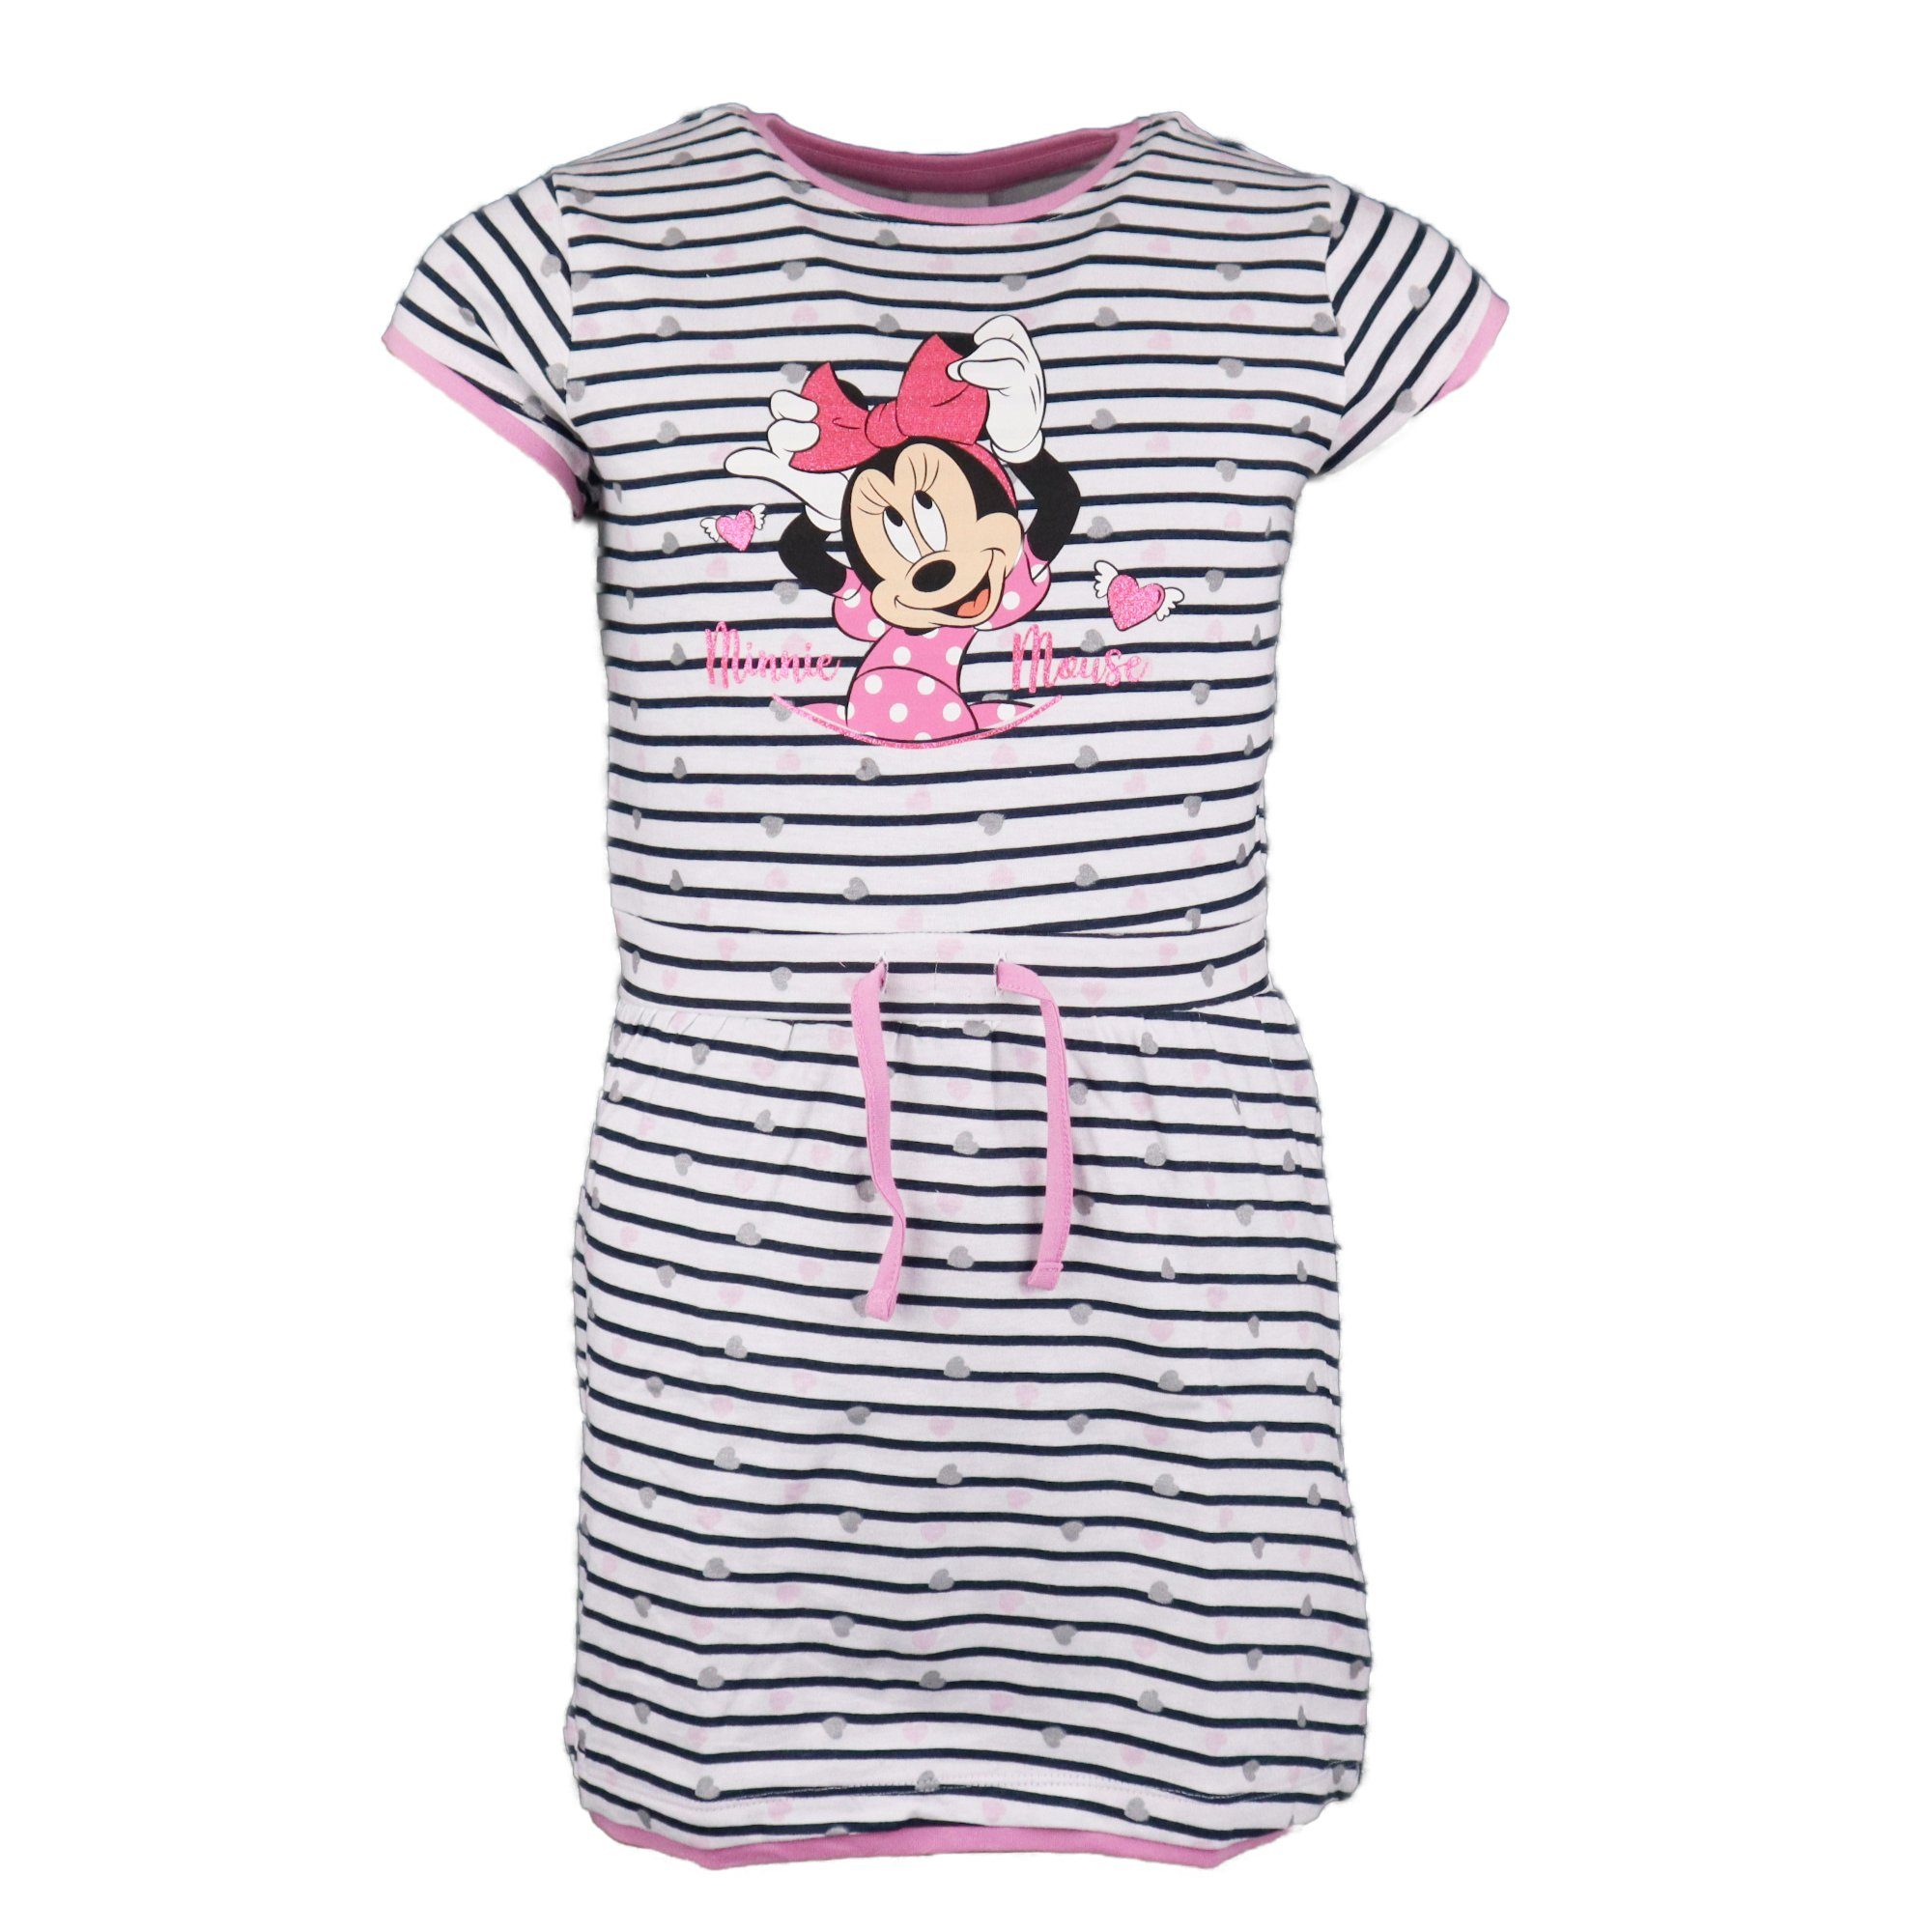 Baumwolle 100% Kleid Gr. 104 Minnie Minnie Disney Maus Sommerkleid gestreift bis 134, Mouse Kinder Mädchen